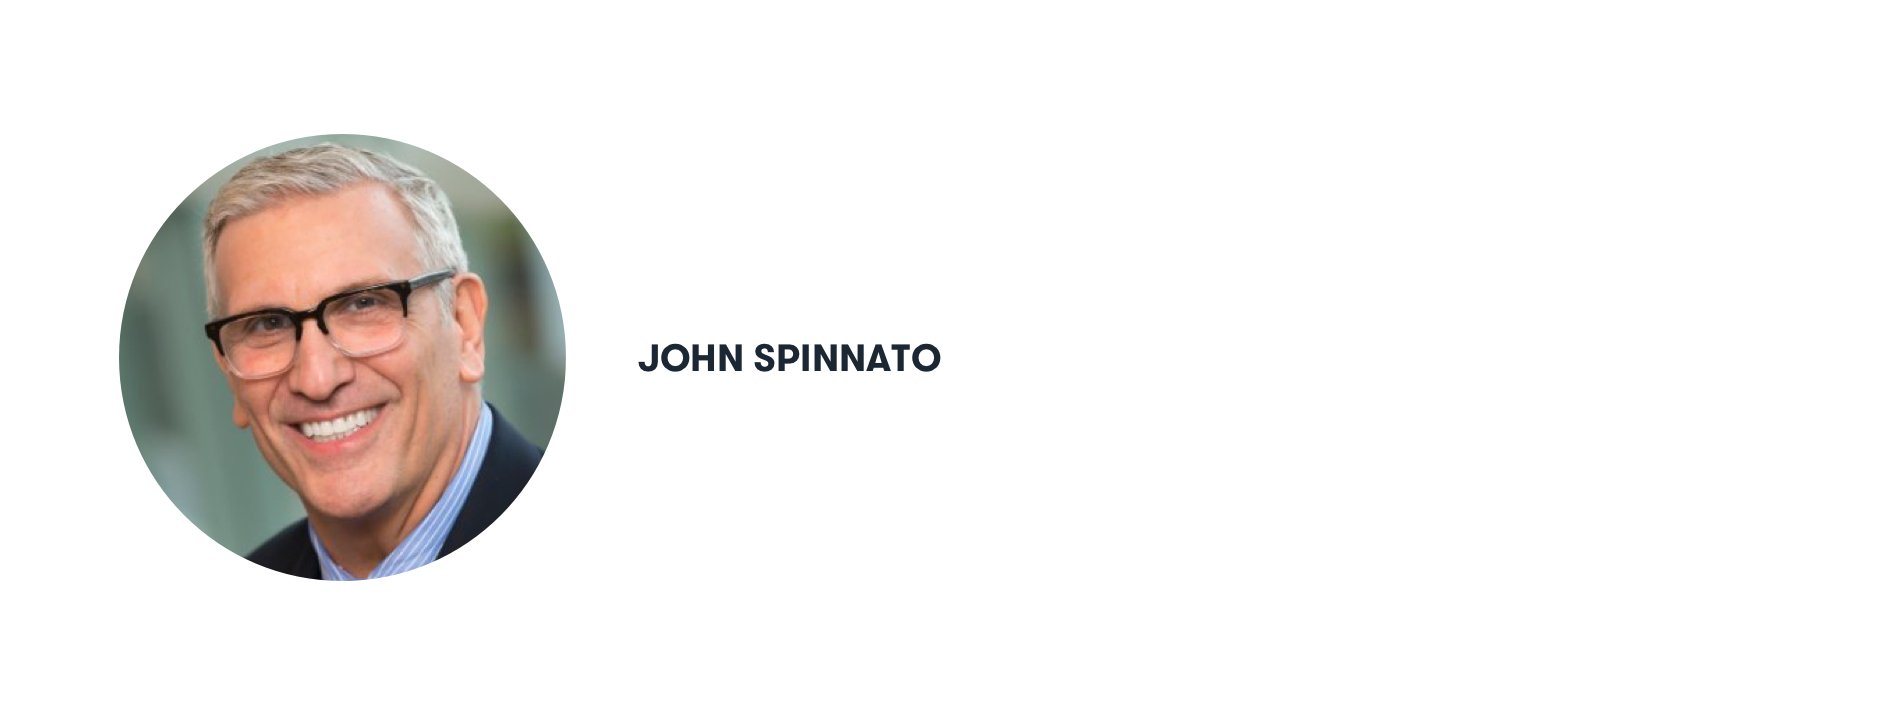 John Spinnato